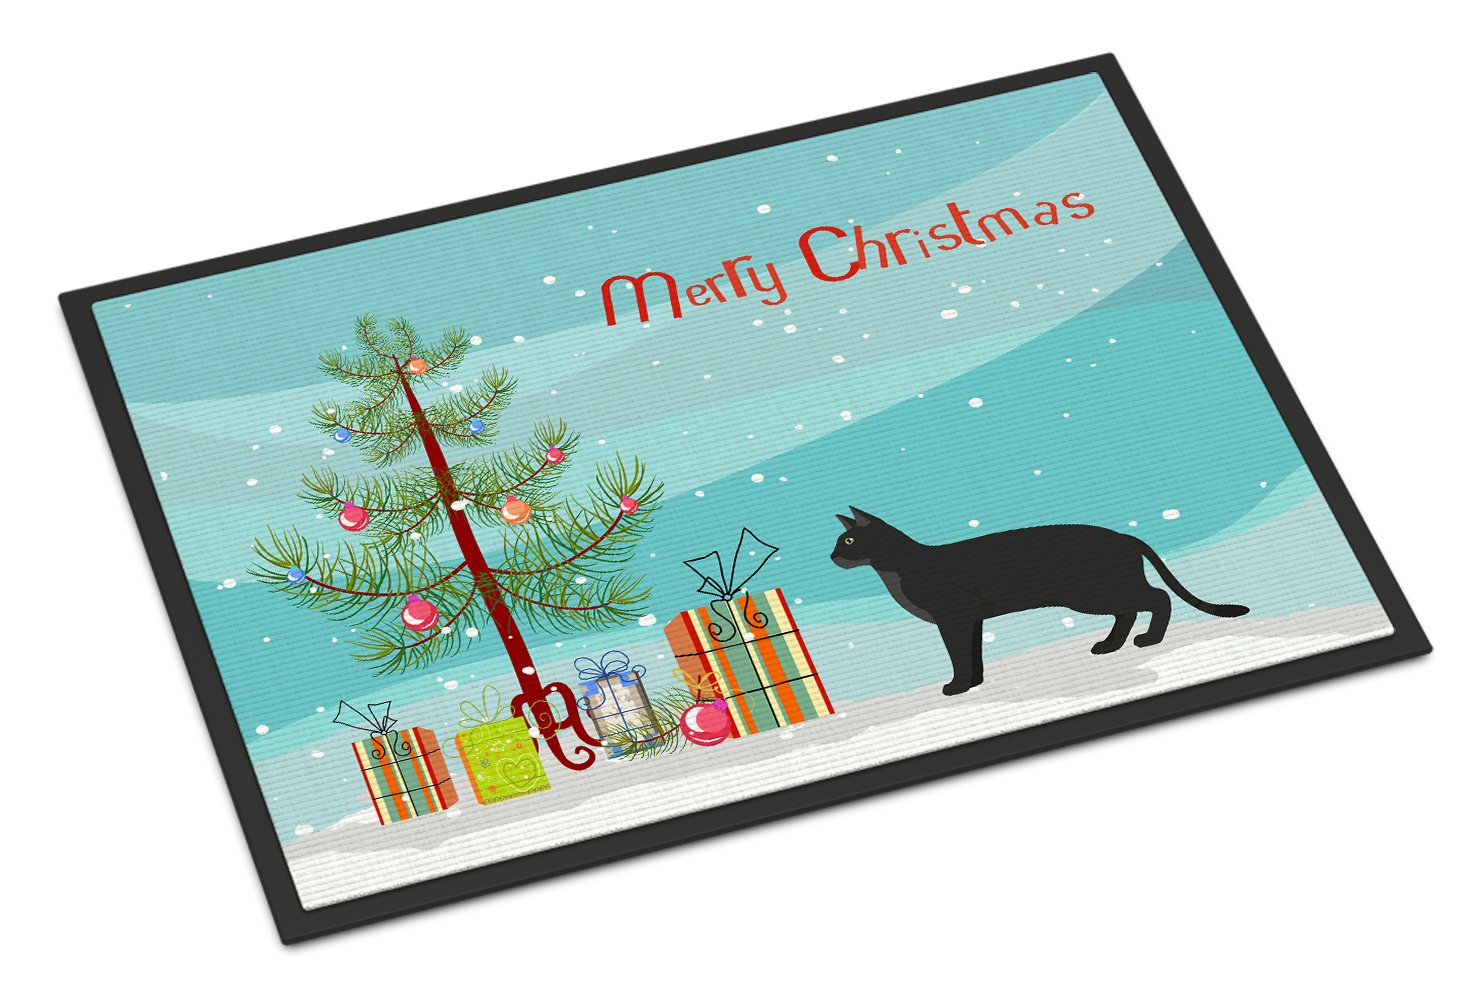 Chausie Black Cat Merry Christmas Indoor or Outdoor Mat 24x36 CK4585JMAT by Caroline's Treasures